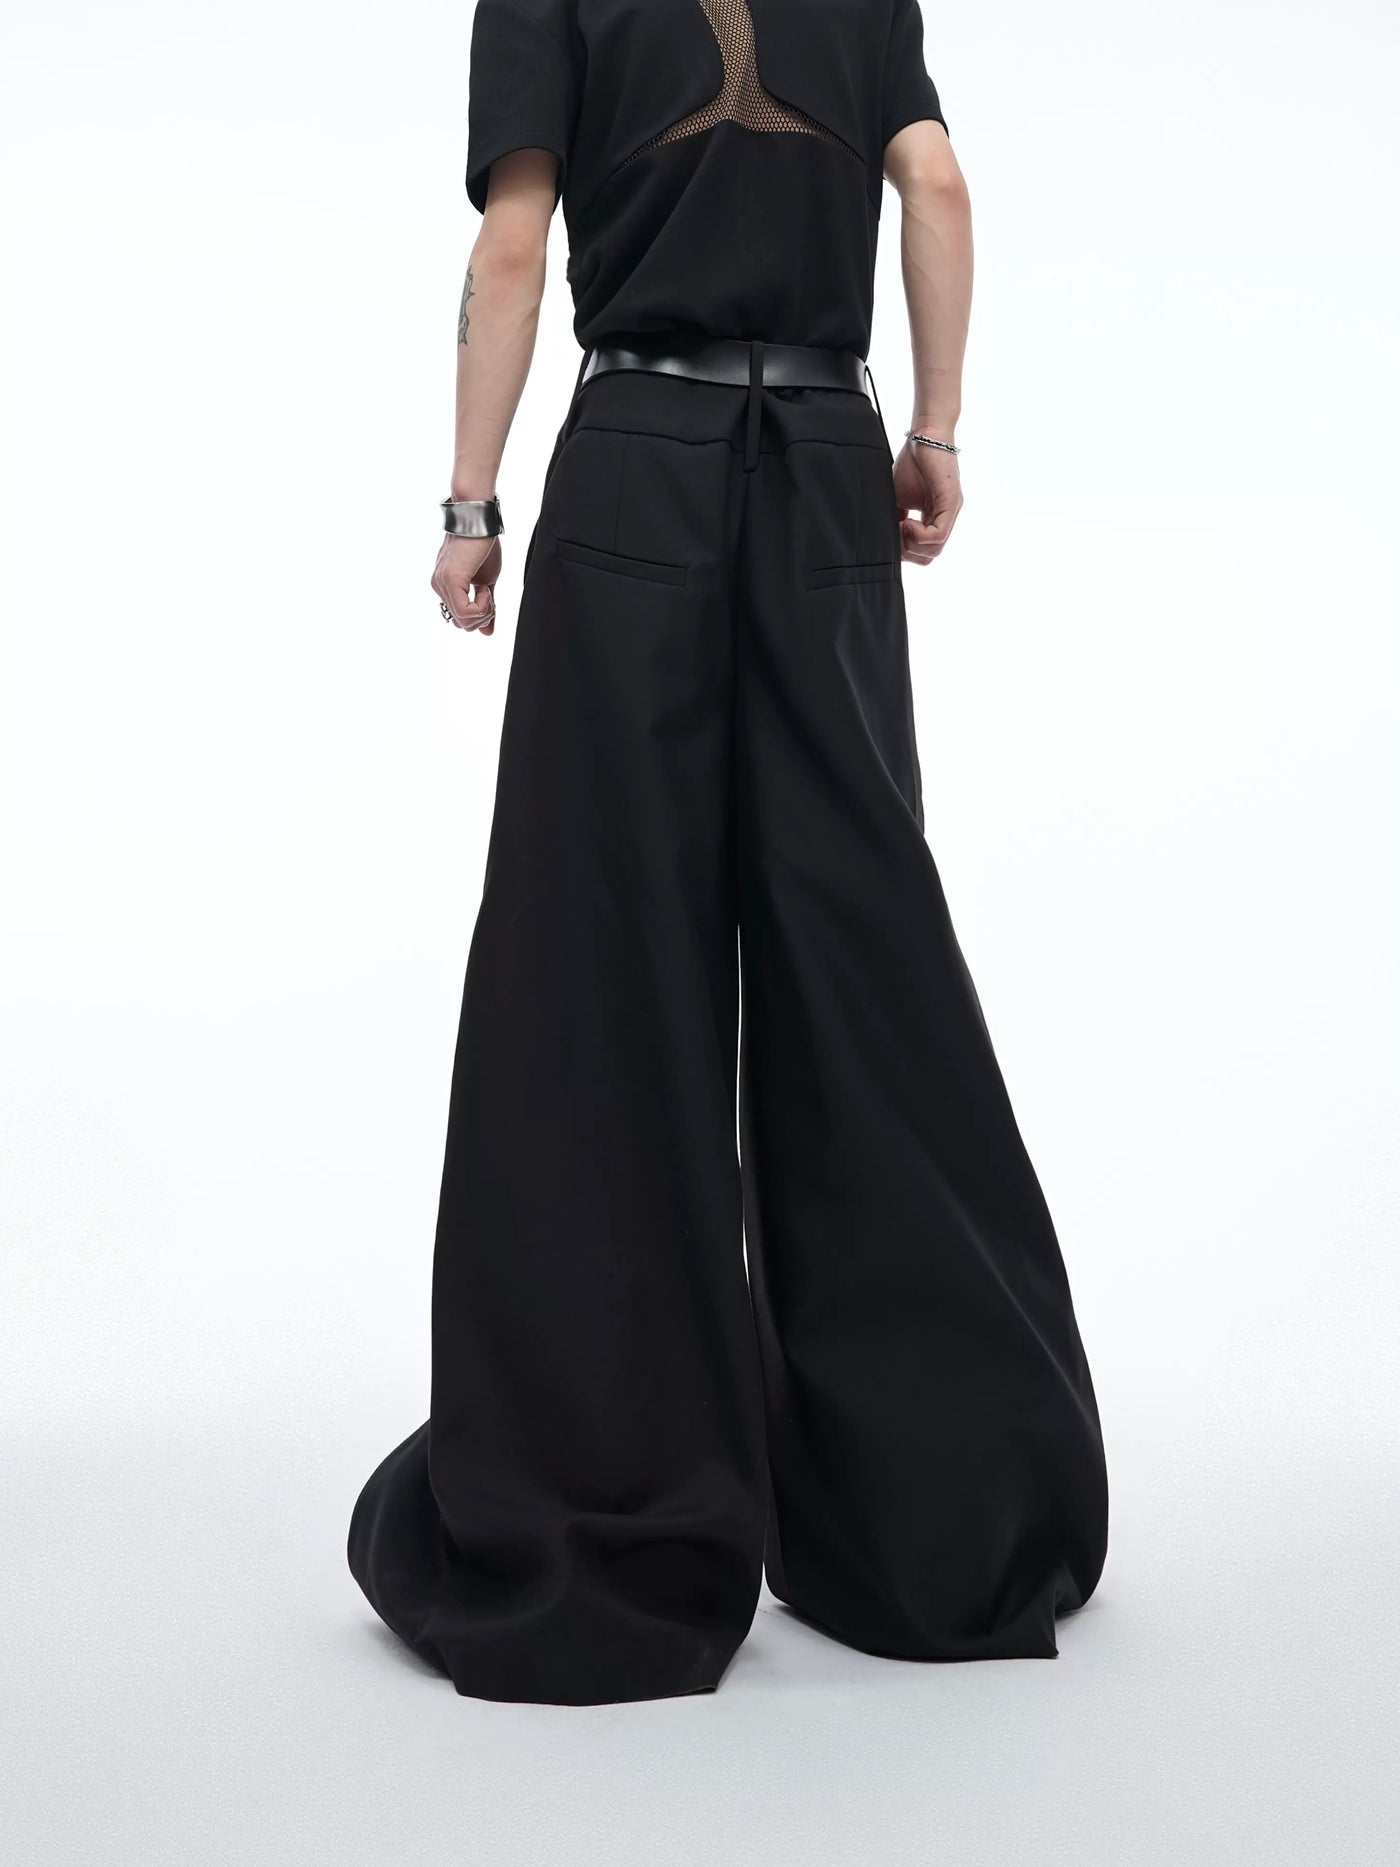 Hexagon Metal Buttons Pants Korean Street Fashion Pants By Argue Culture Shop Online at OH Vault